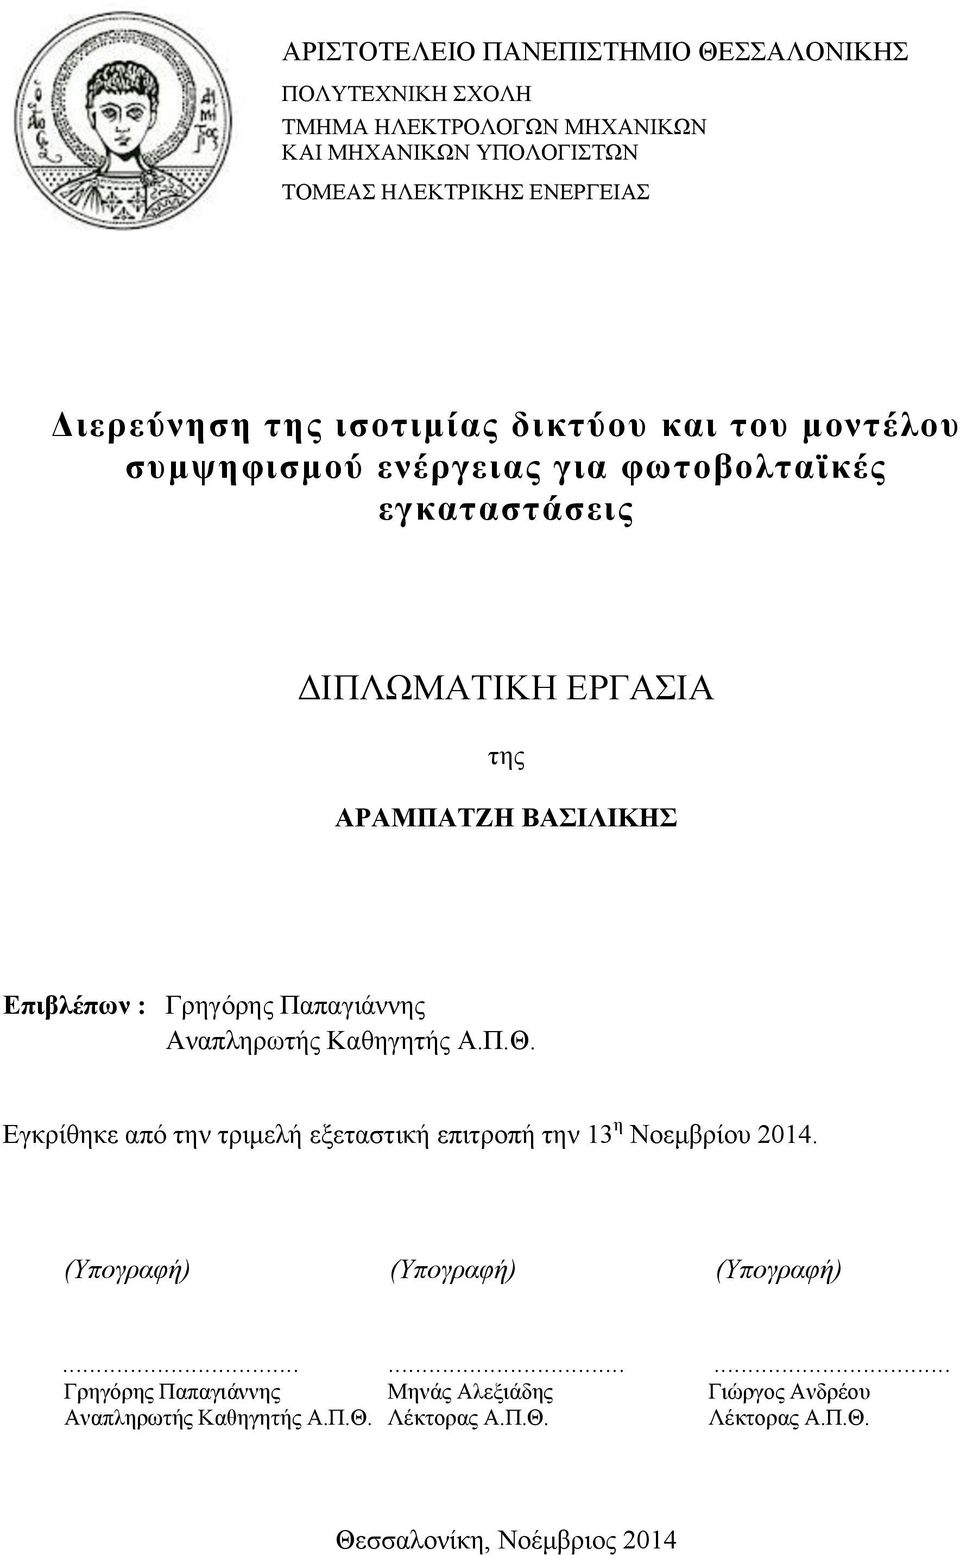 Γρηγόρης Παπαγιάννης Αναπληρωτής Καθηγητής Α.Π.Θ. Εγκρίθηκε από την τριµελή εξεταστική επιτροπή την 13 η Νοεµβρίου 2014.